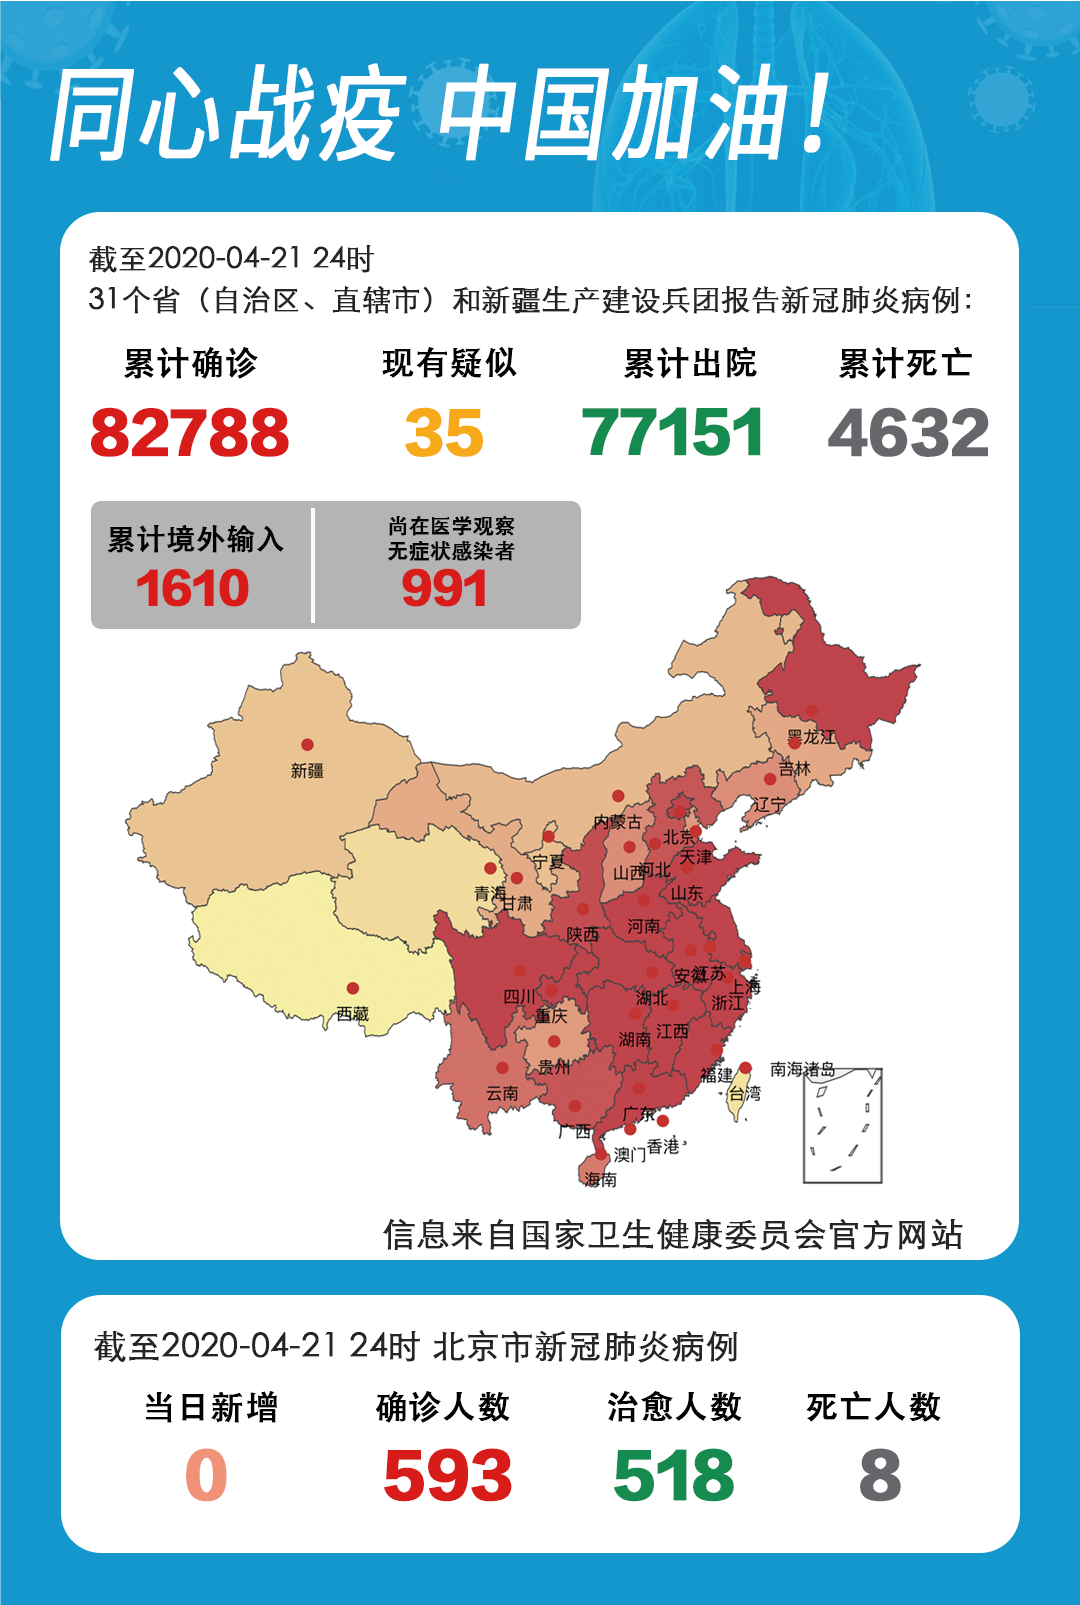 疫情报告昨日本土新增7例全部来自黑龙江北京连续6日无新增